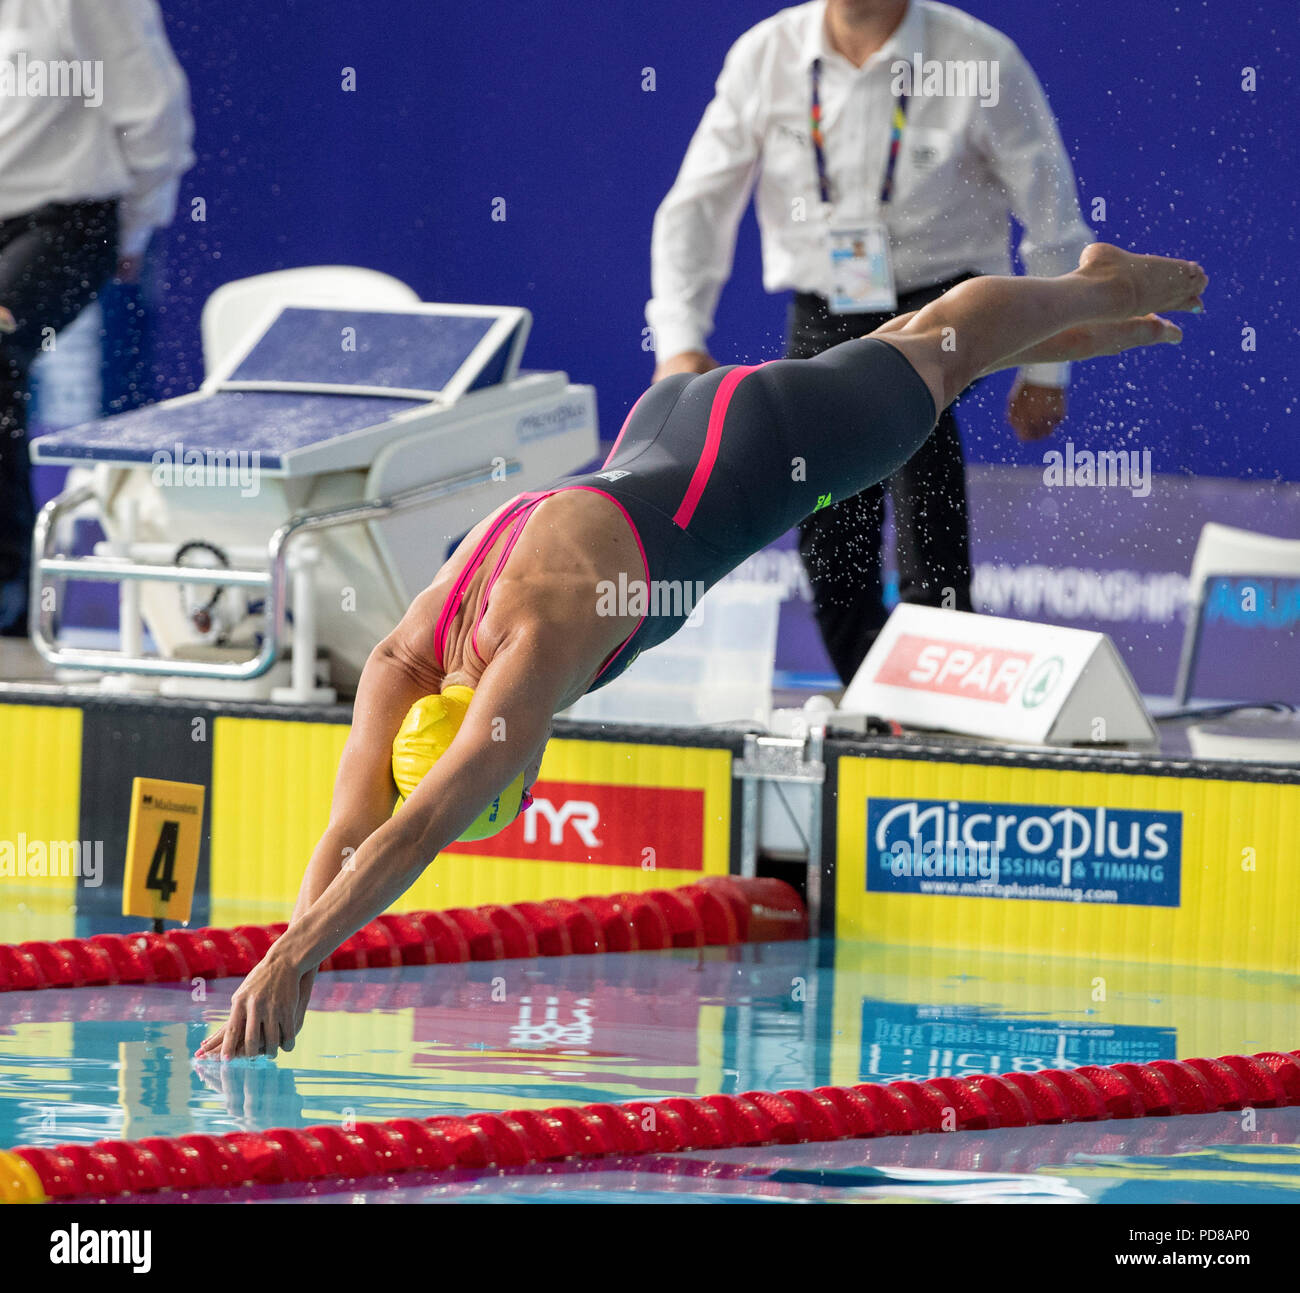 7 agosto 2018, Tollcross International centro nuoto, Glasgow, Scozia; Glasgow 2018 Unione Nuoto Campionati; Sarah Sjoestroem (SWE) dives in per la sua 100m Freestyle semi-finale Foto Stock